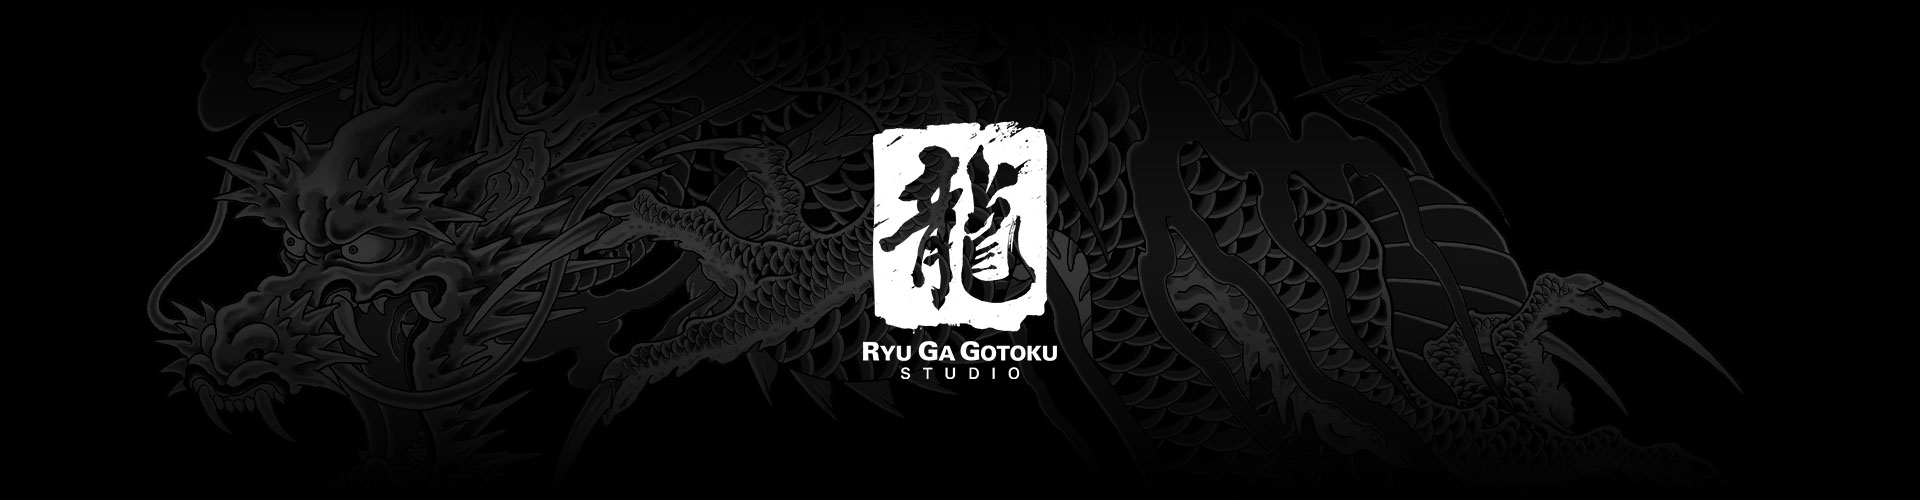 Logotipo do Ryu Ga Gotoku Studio com um fundo de tatuagem de dragão cinza.